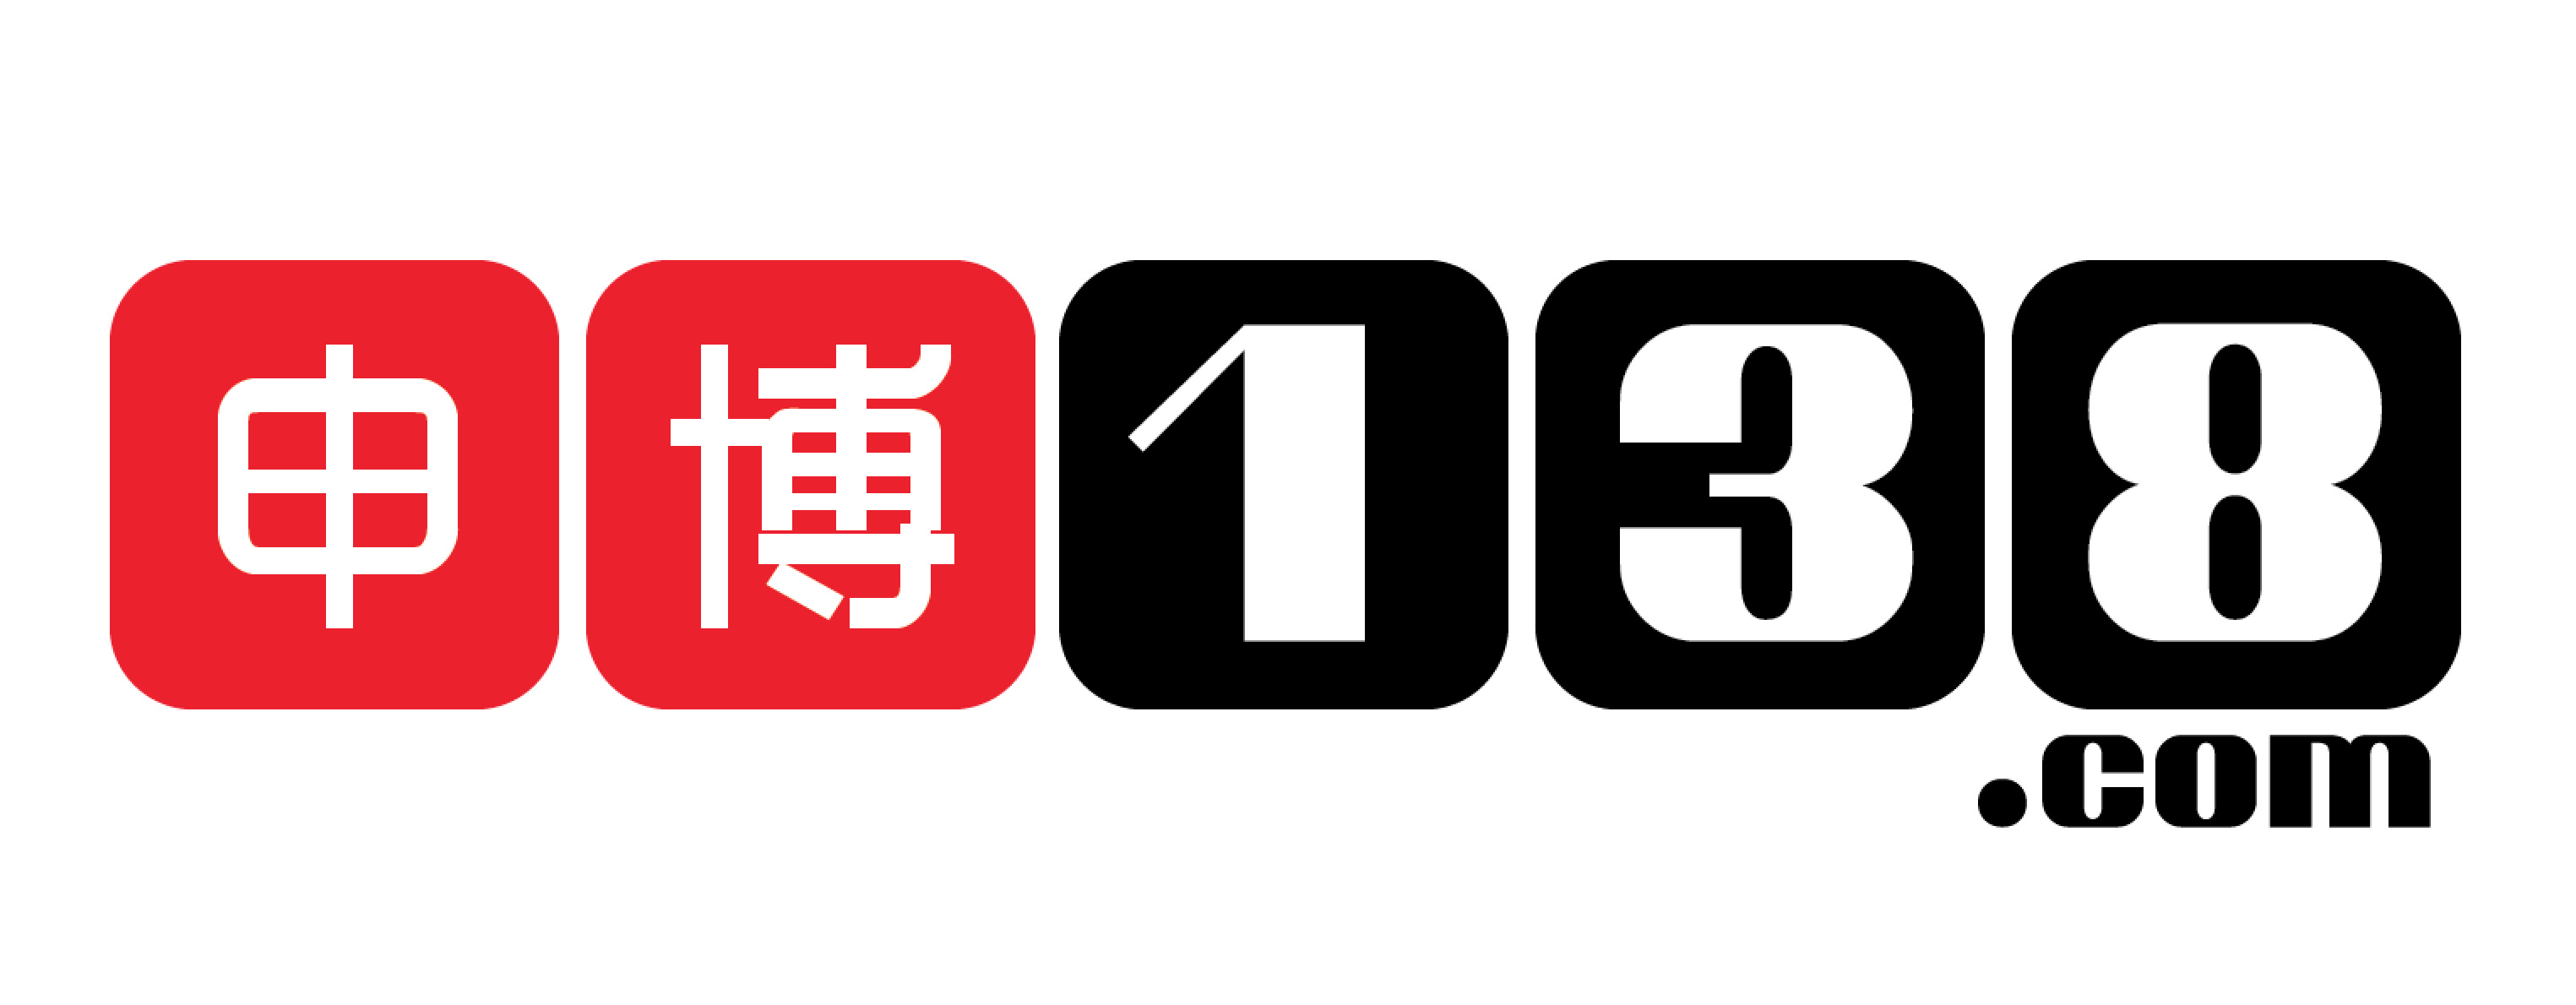 138.com-Logo.jpg